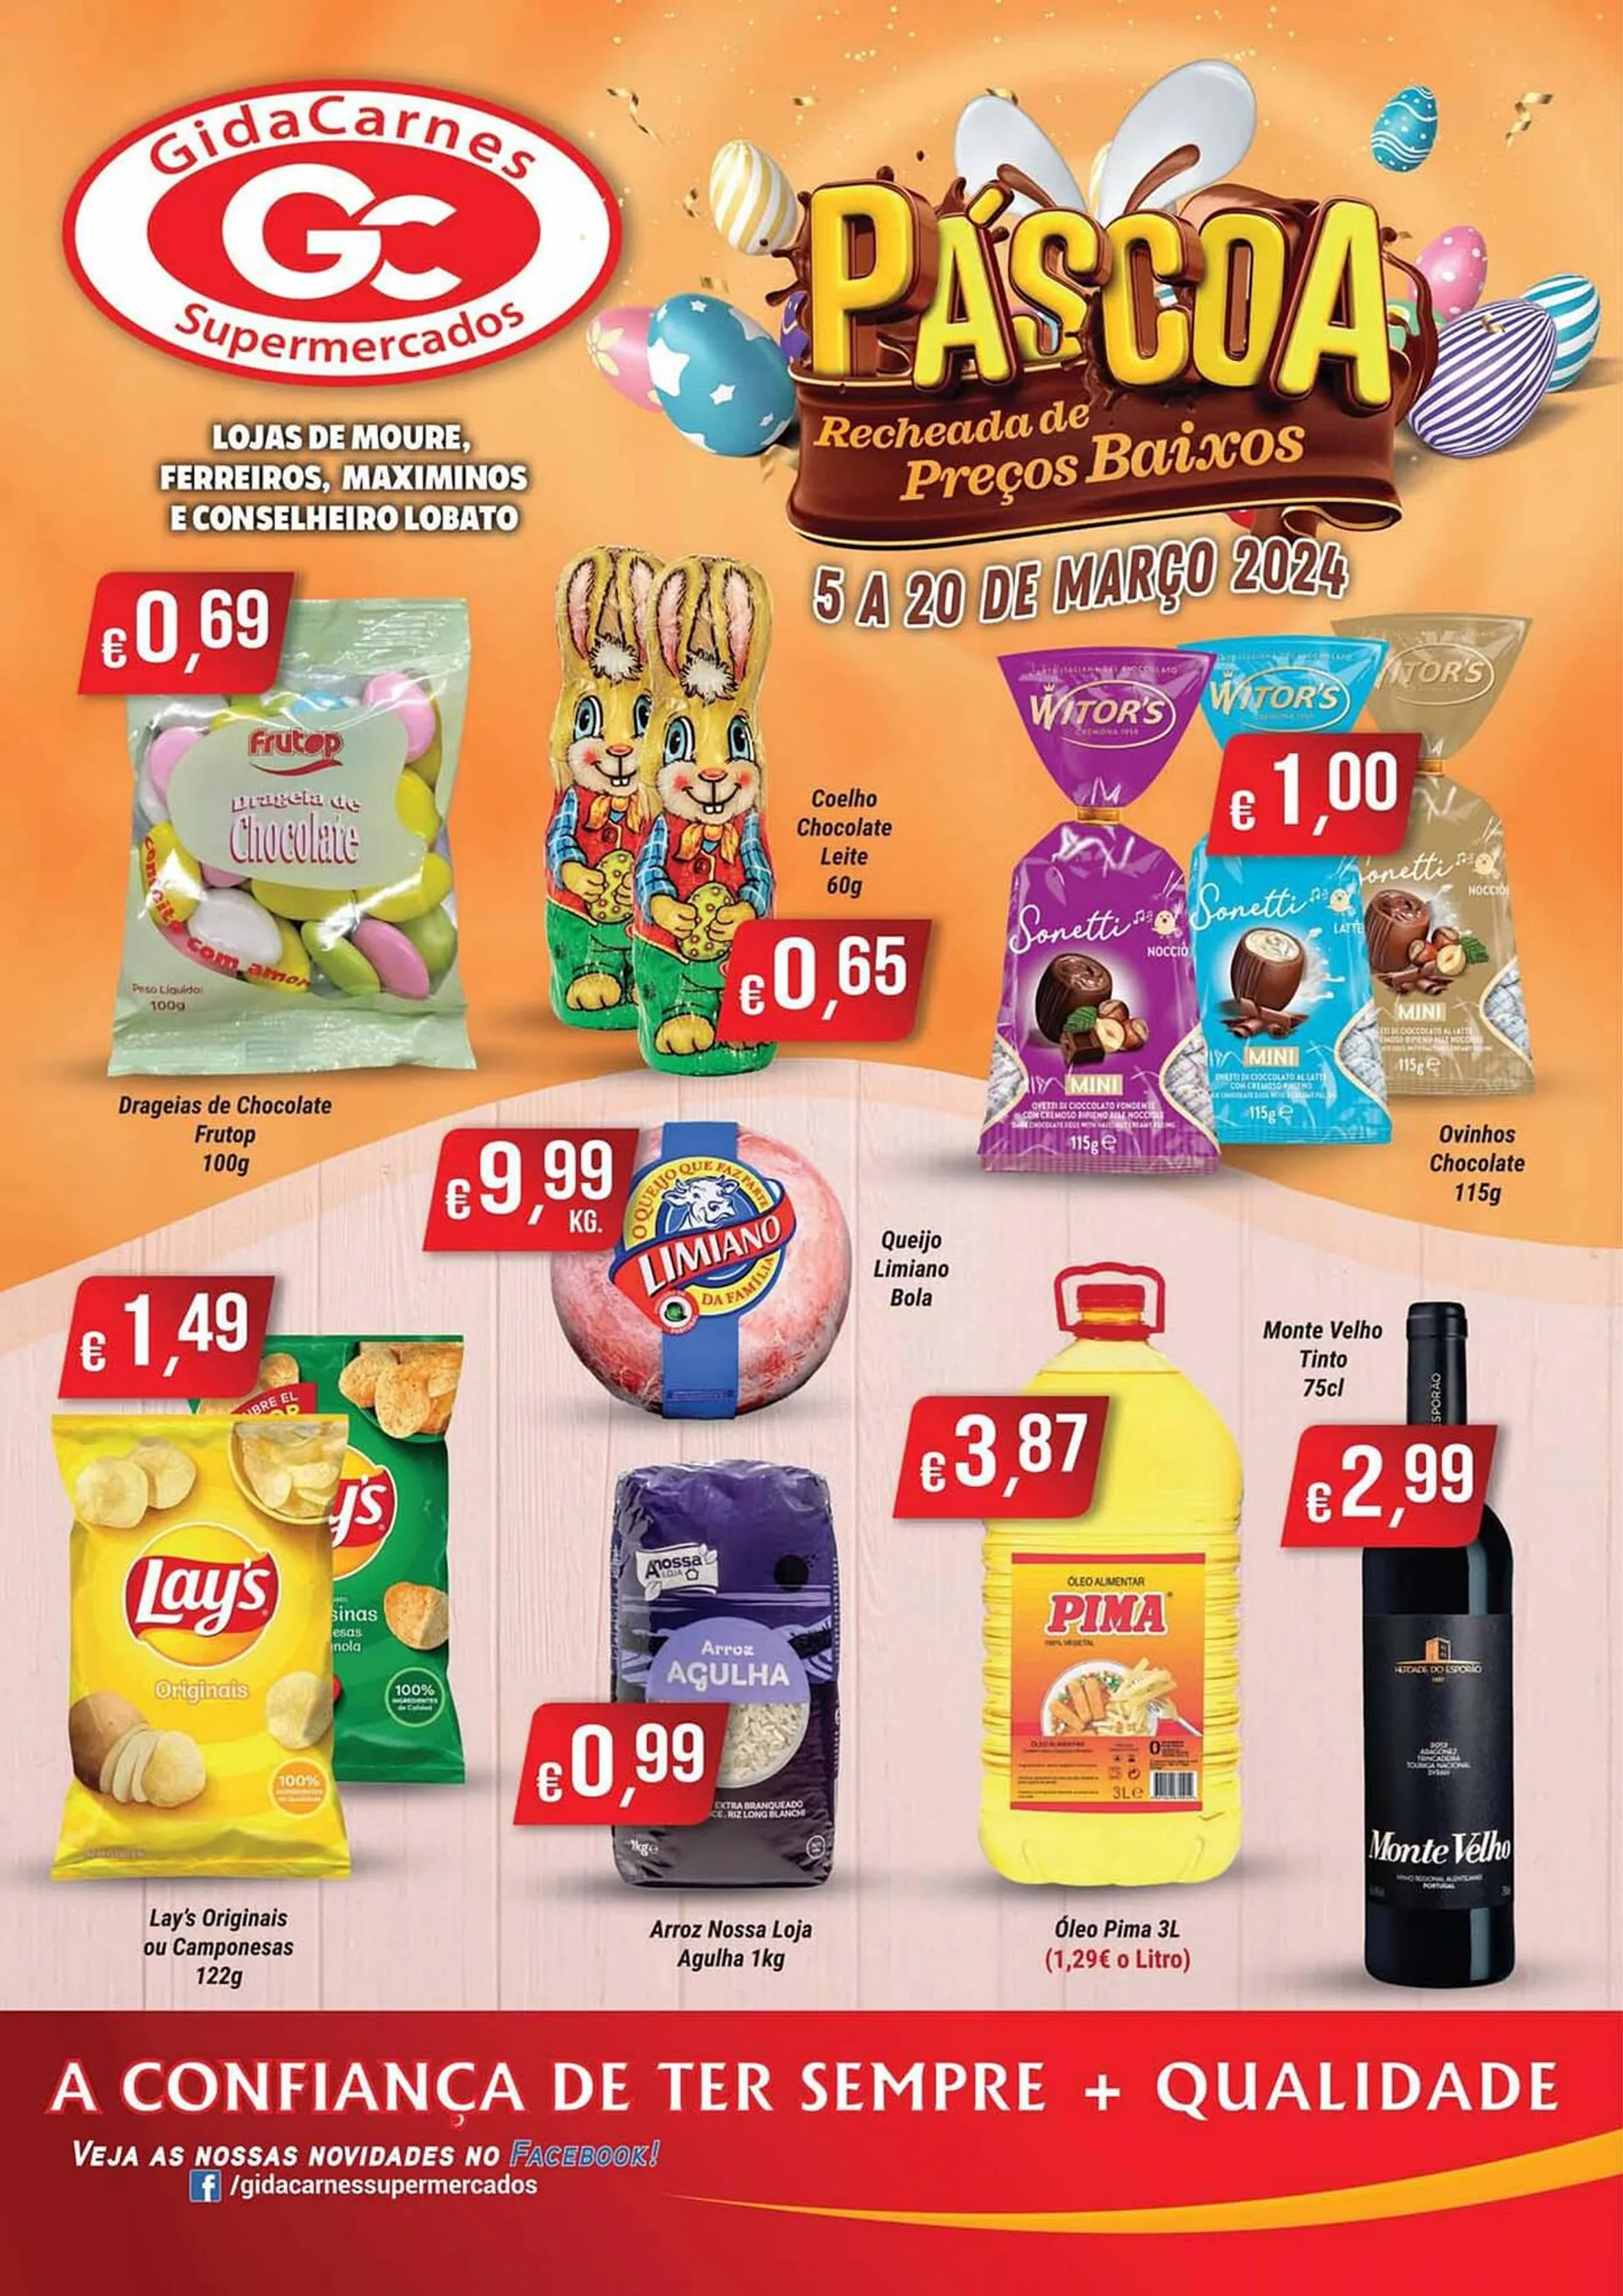 Folheto Folheto GidaCarnes Supermercados de 5 de março até 20 de março 2024 - Pagina 